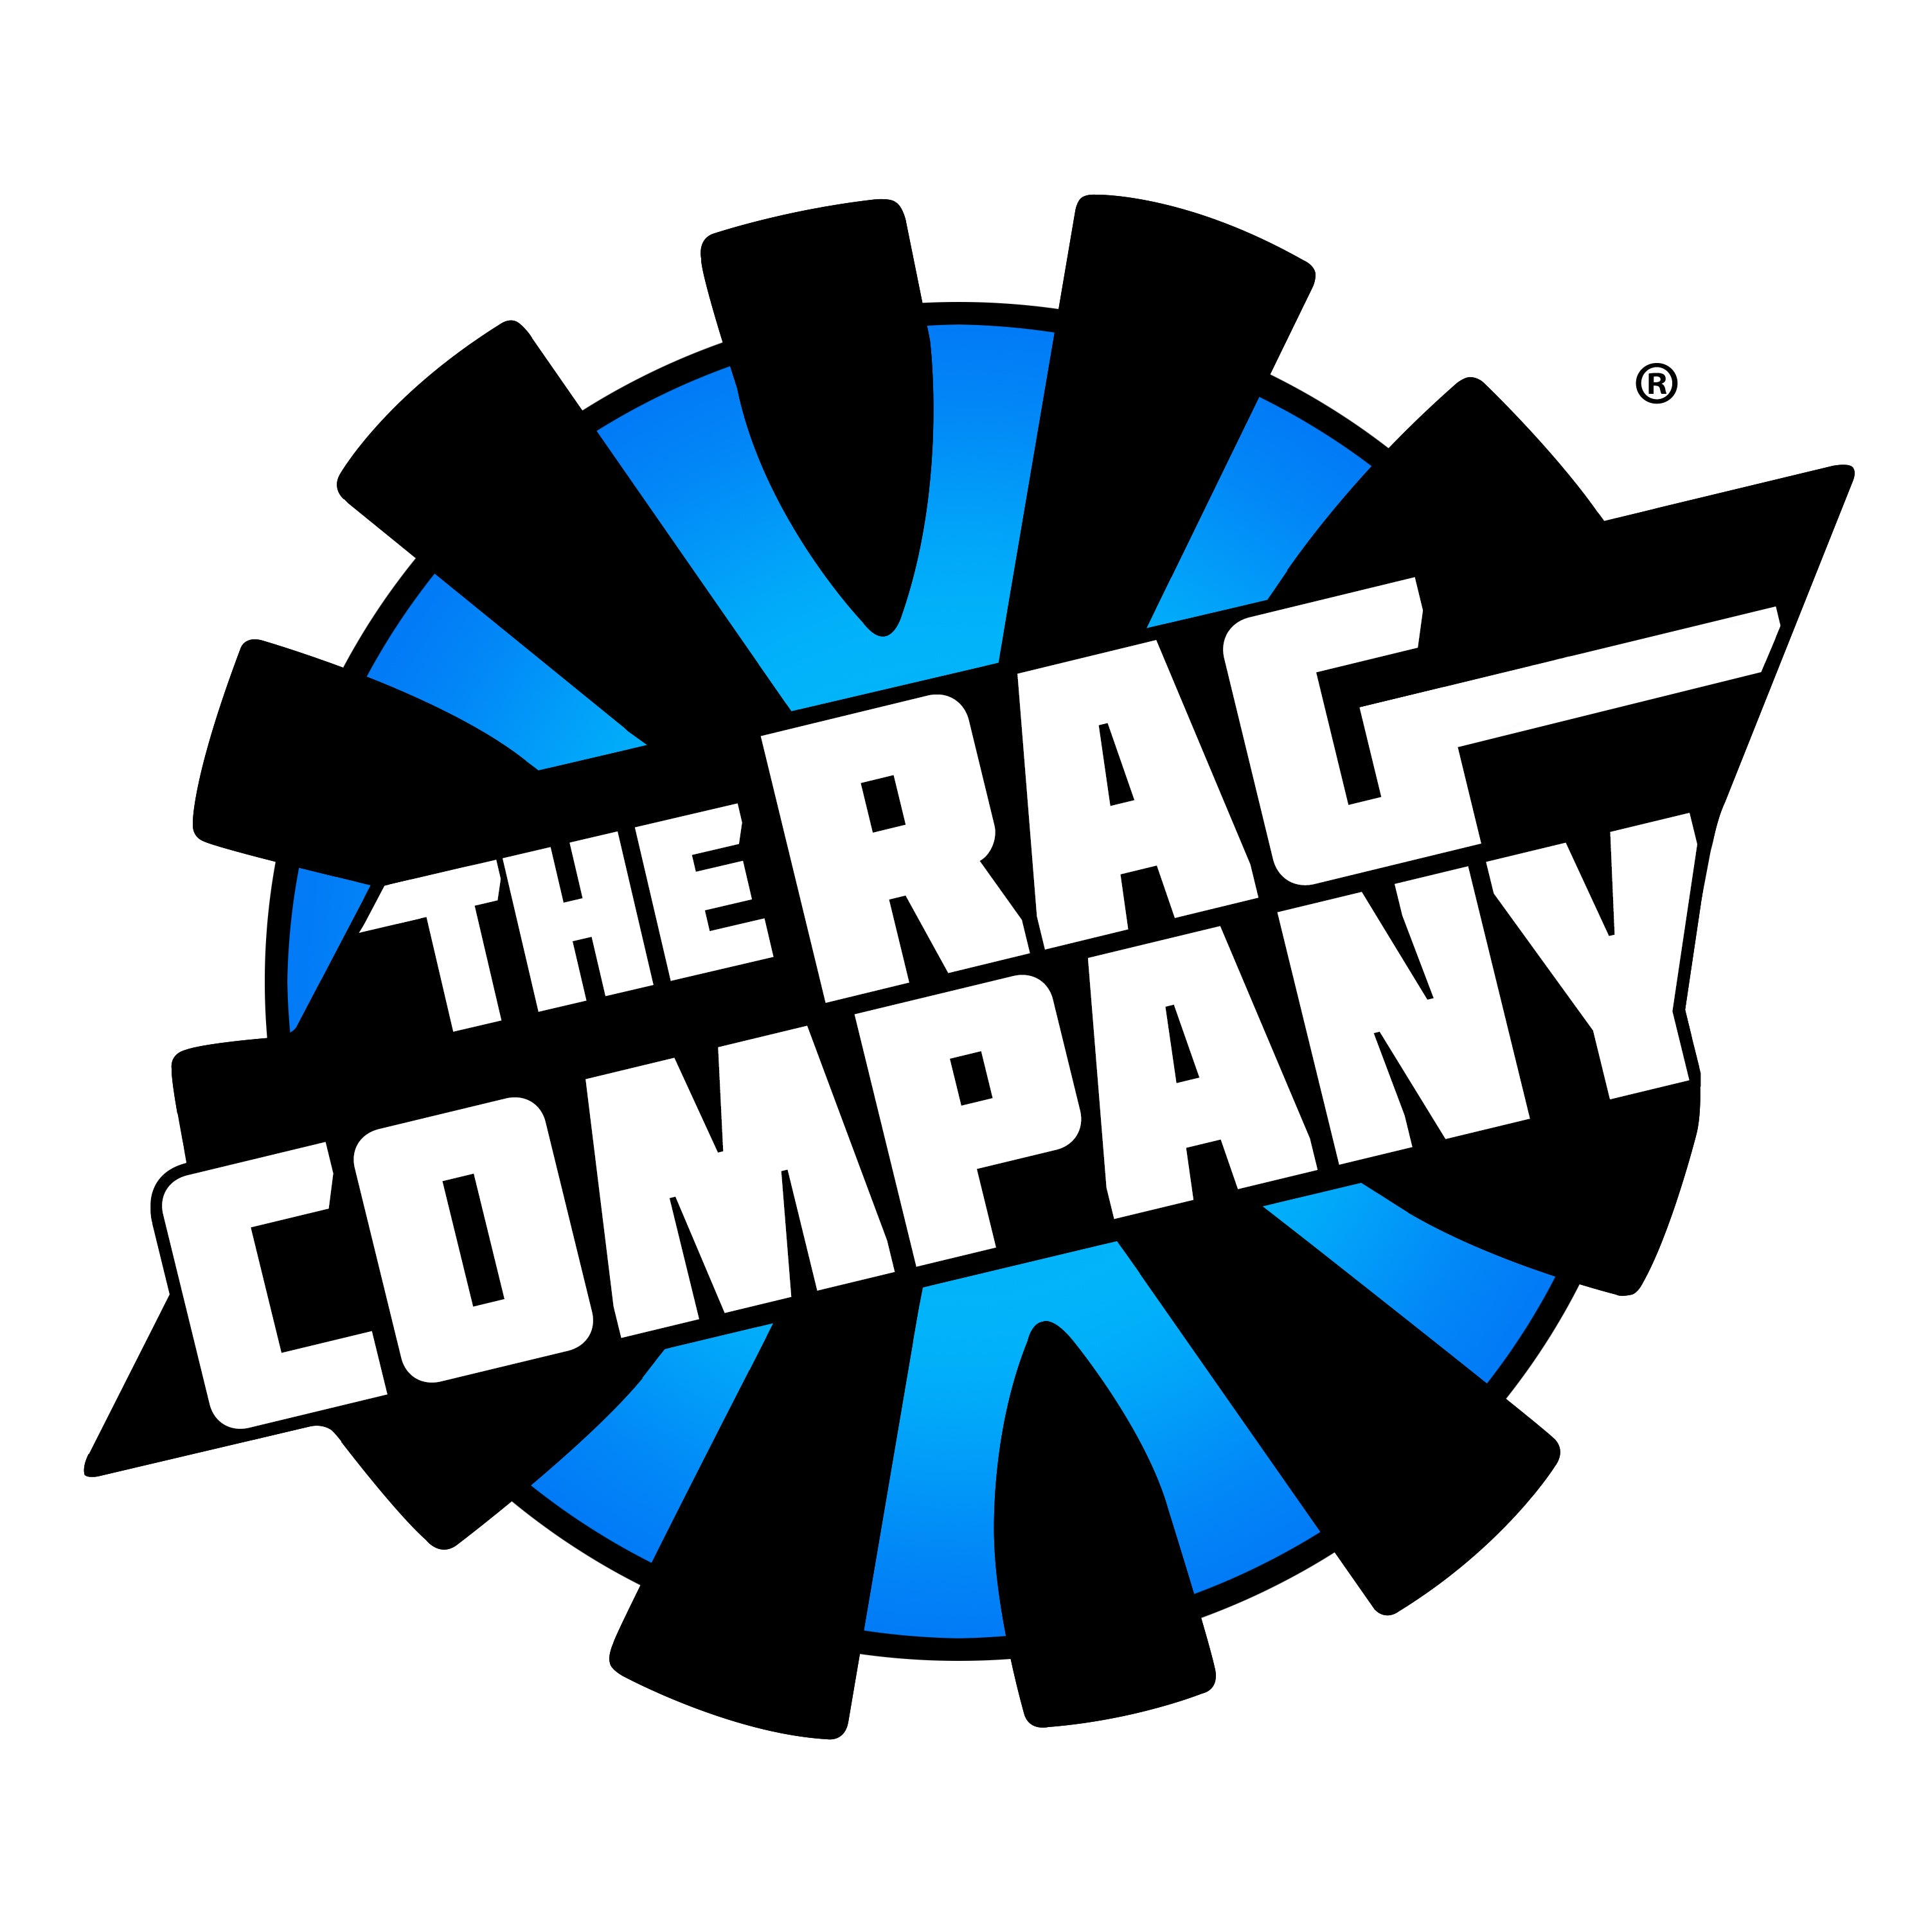 The Rag Company Dry Me A River Waffle Weave Towel Light Blue - 20x40